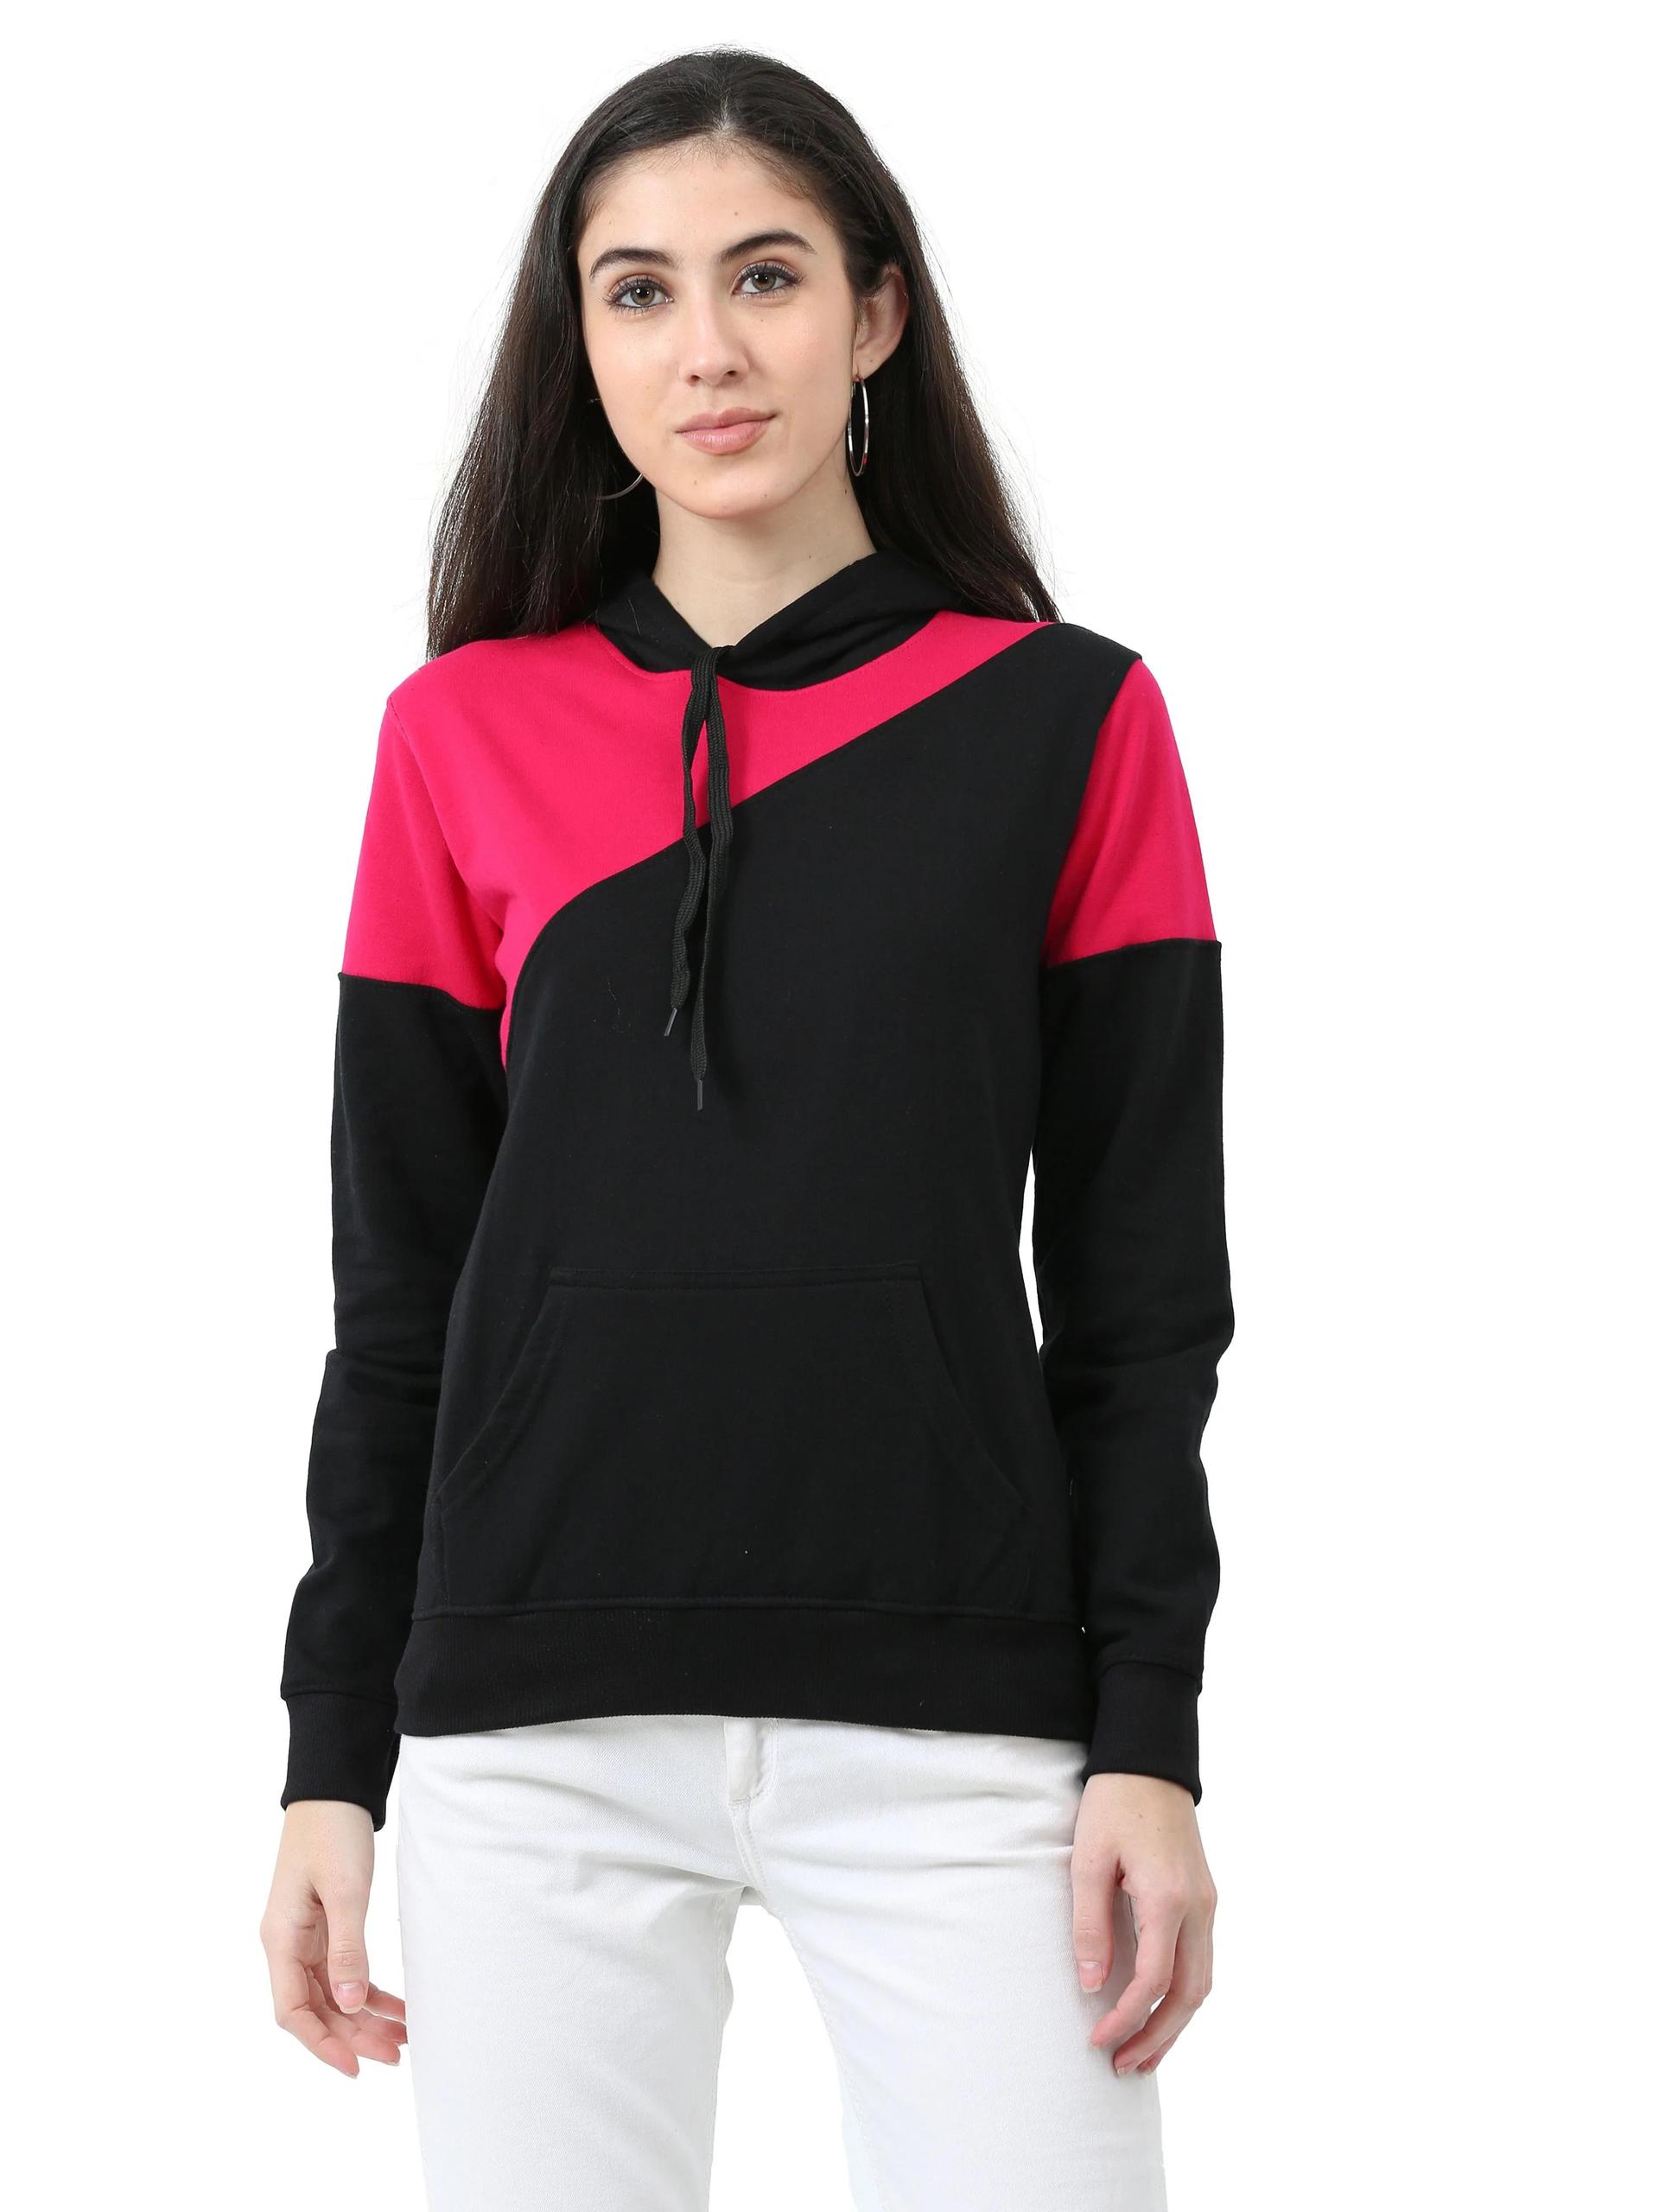 women's-cotton-color-block--sweatshirt-hoodies